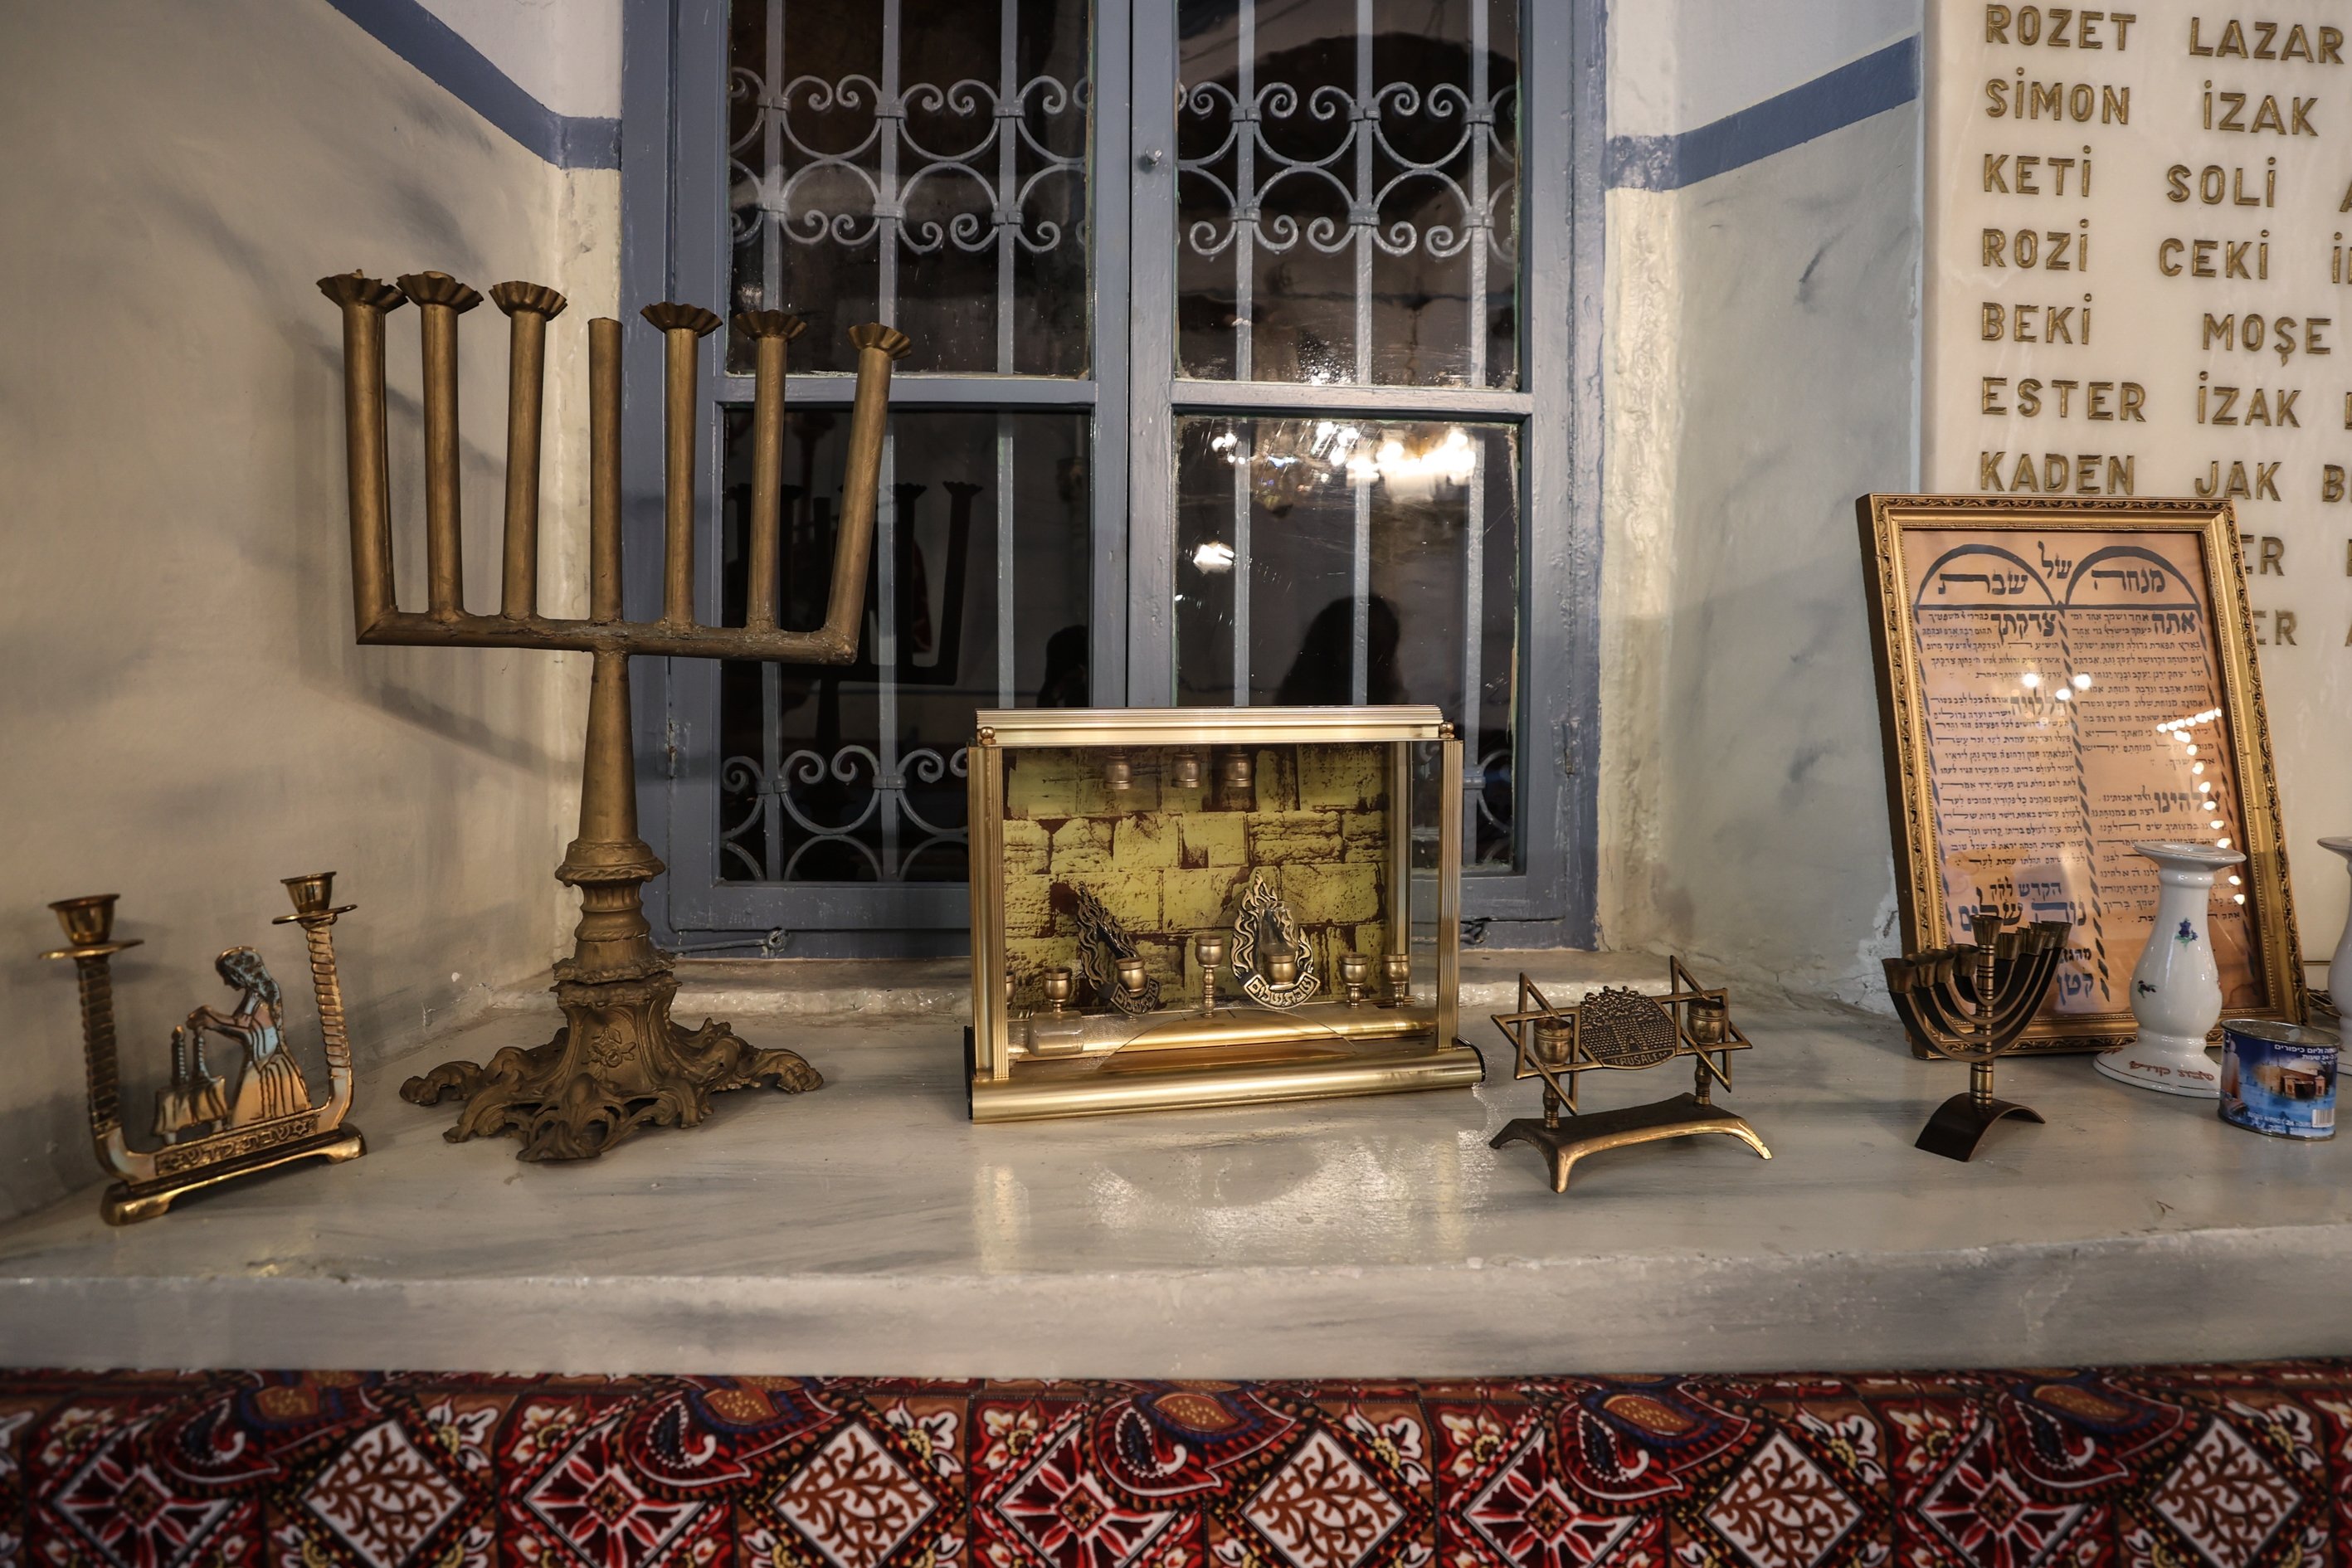 Jewish objects from a synagogue, Izmir, Turkey, Jan. 24, 2022. (AA)